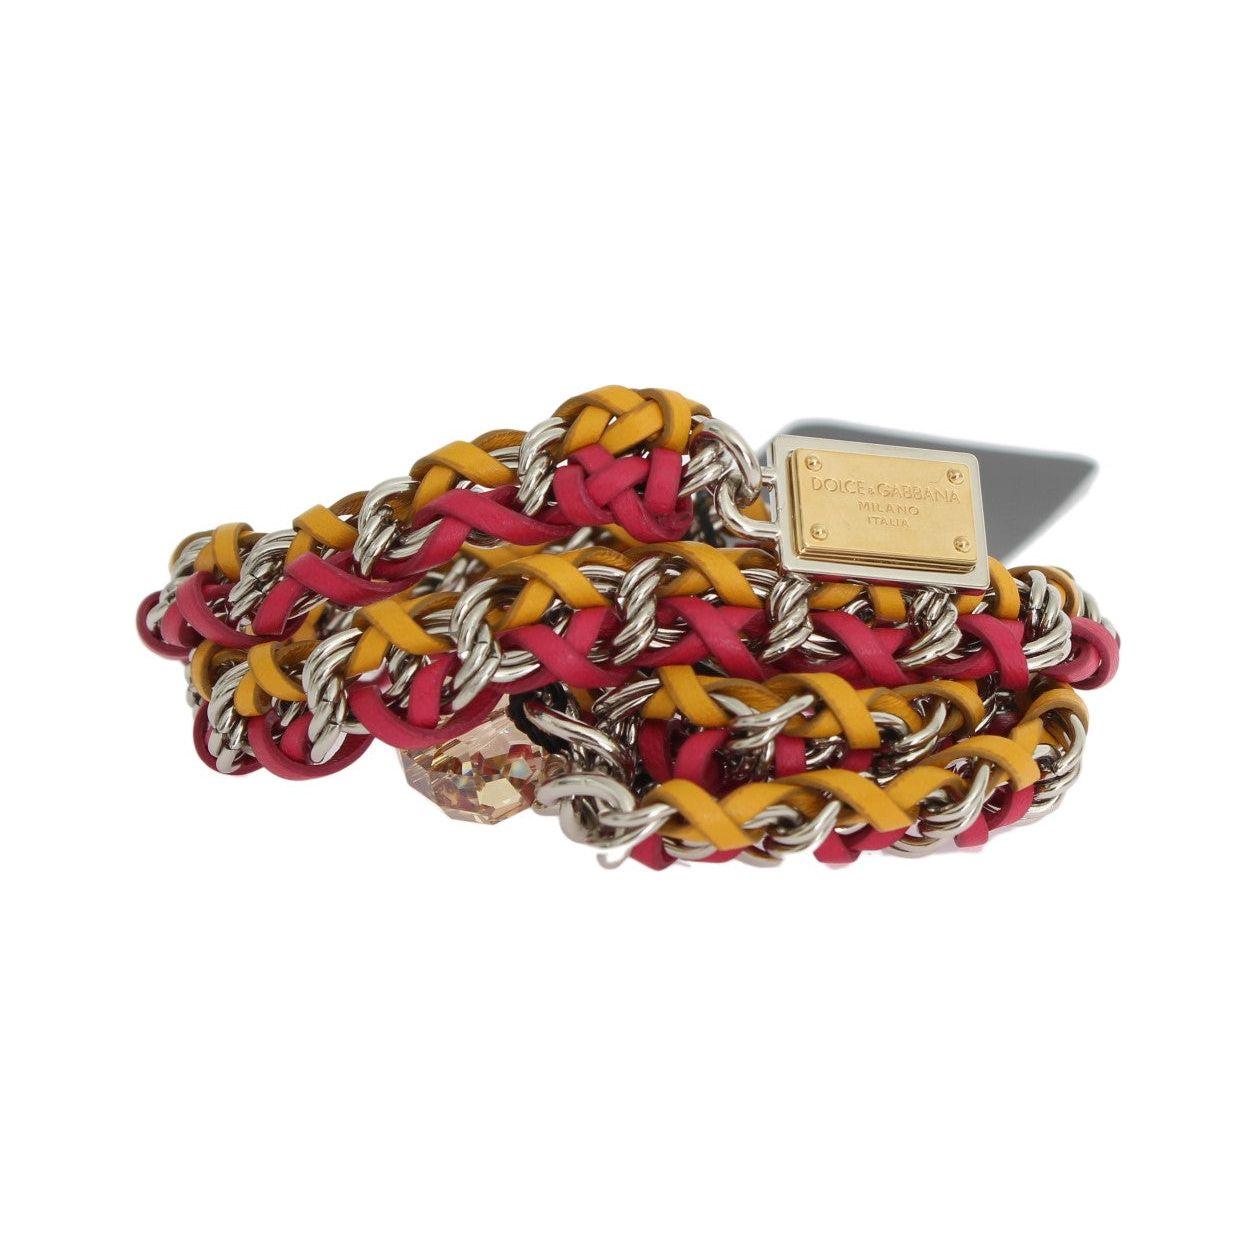 Dolce & Gabbana Elegant Multicolor Crystal-Embellished Belt Belt red-yellow-leather-crystal-belt 473811-red-yellow-leather-crystal-belt-6.jpg